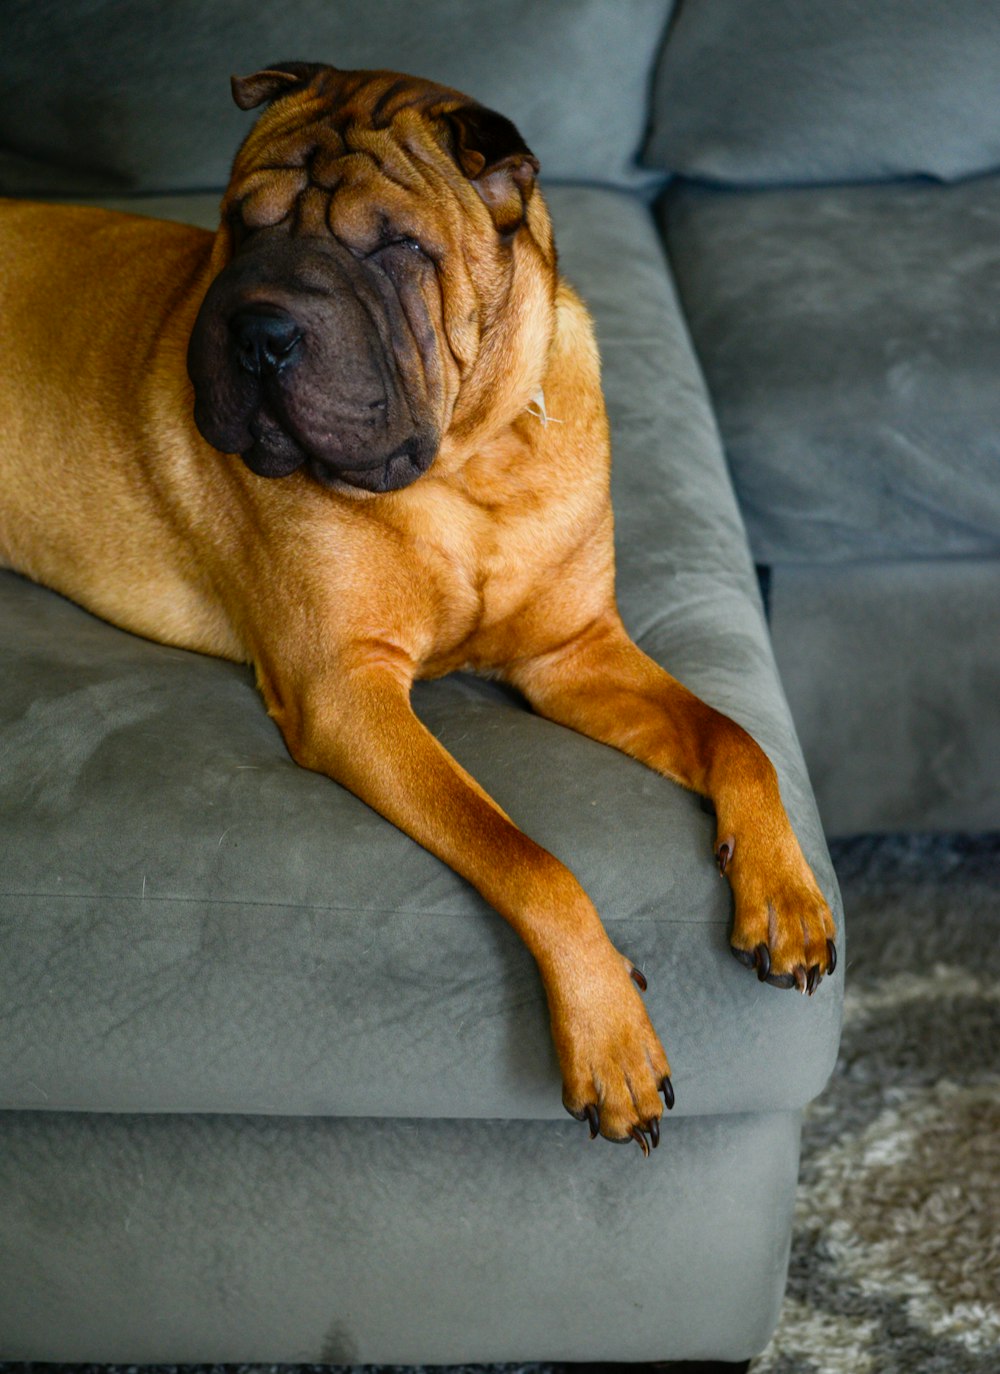 회색 소파 위에 누워있는 큰 갈색 개